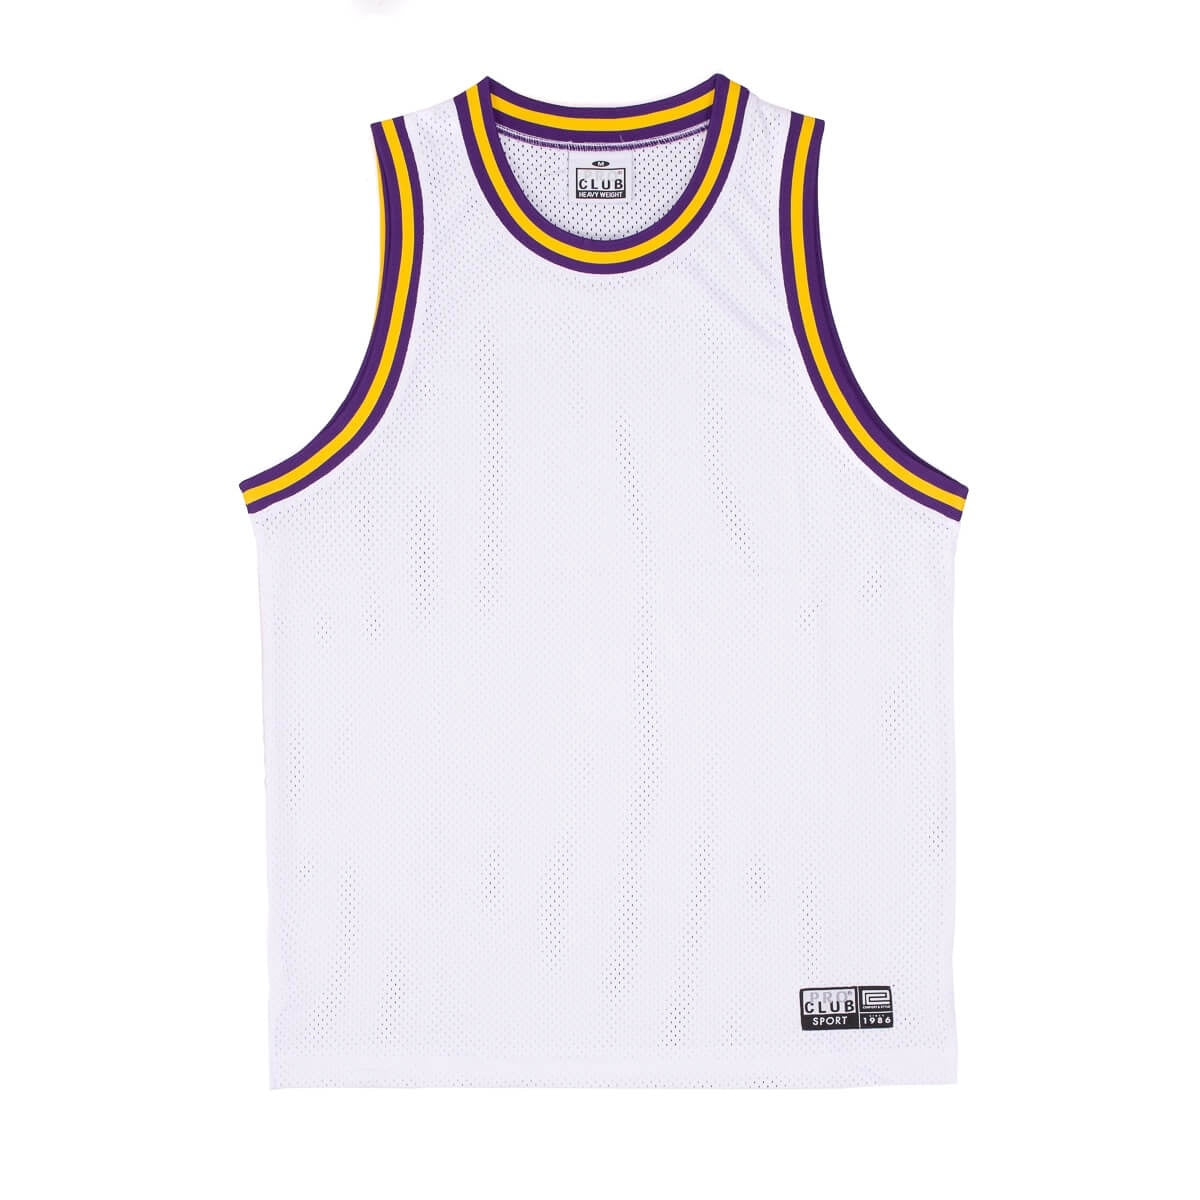 Pro Club Classic Basketball Jersey - White/Purple